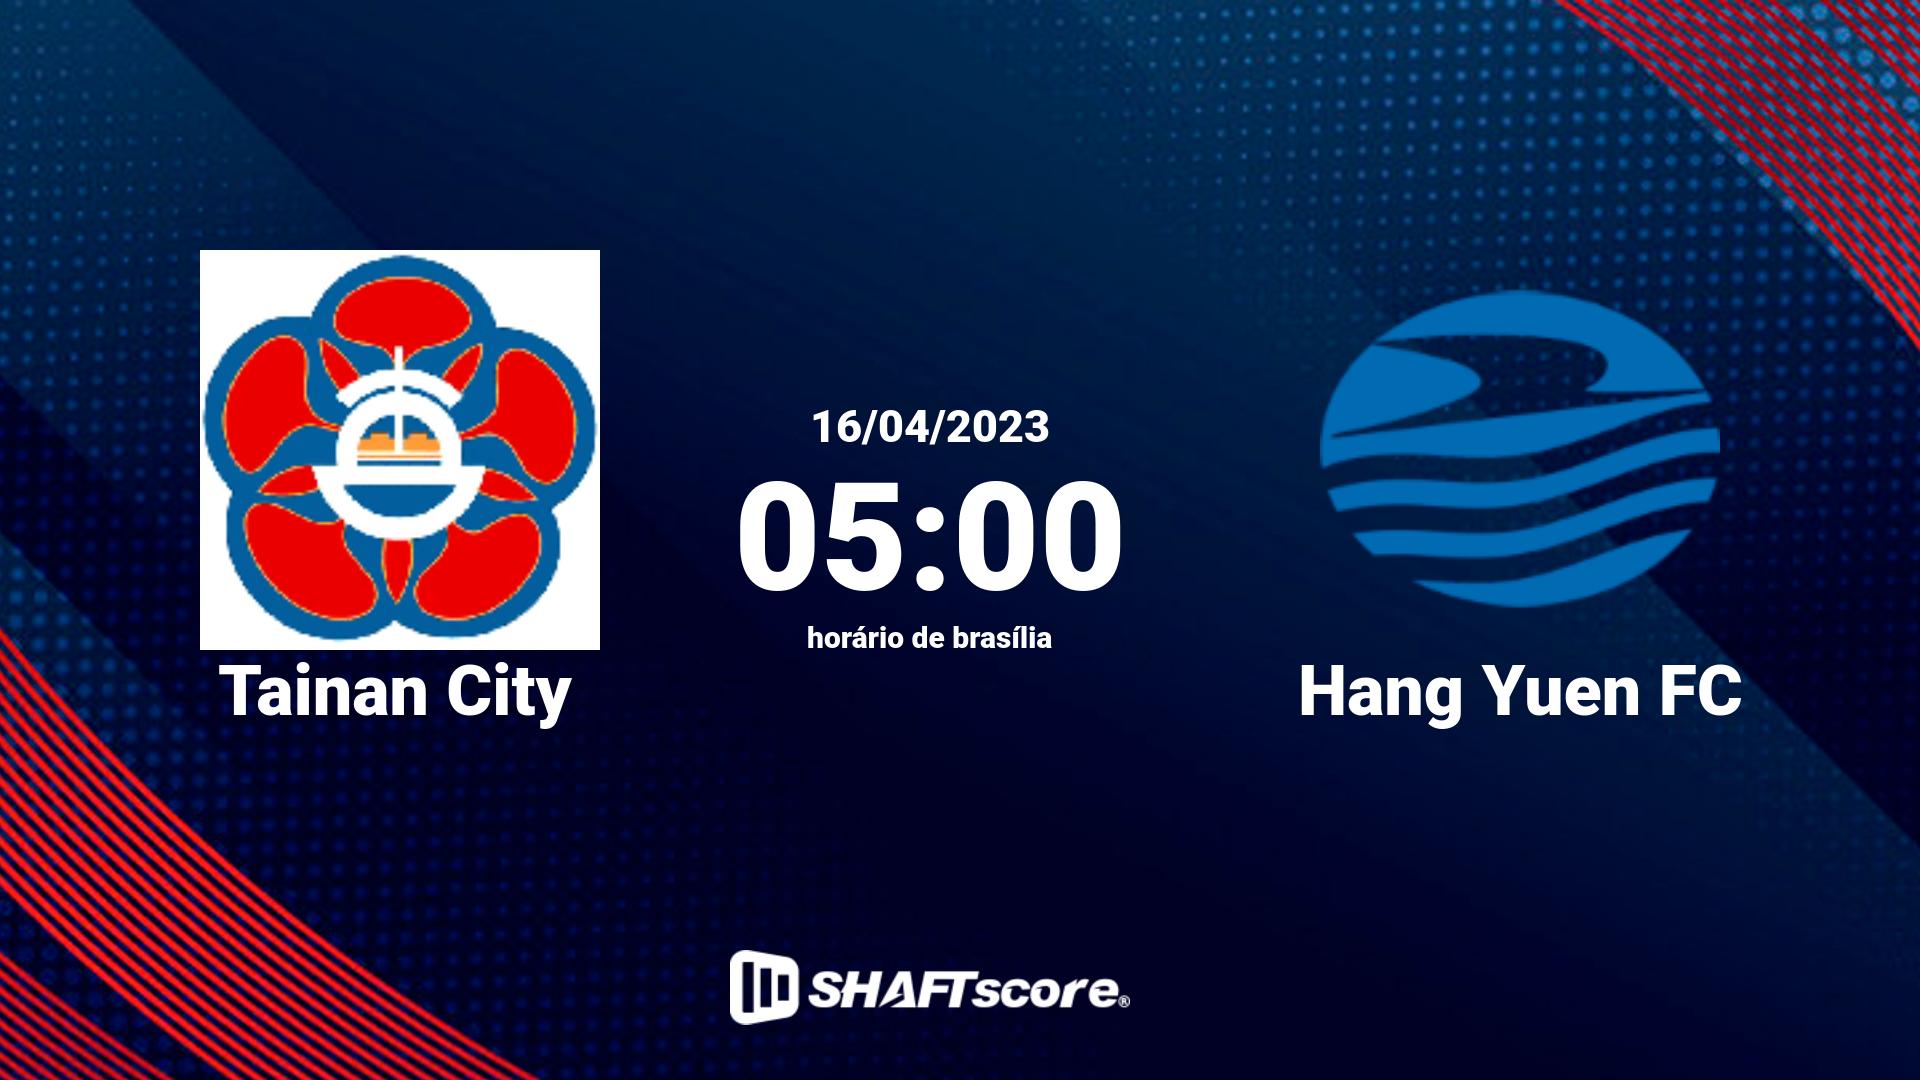 Estatísticas do jogo Tainan City vs Hang Yuen FC 16.04 05:00